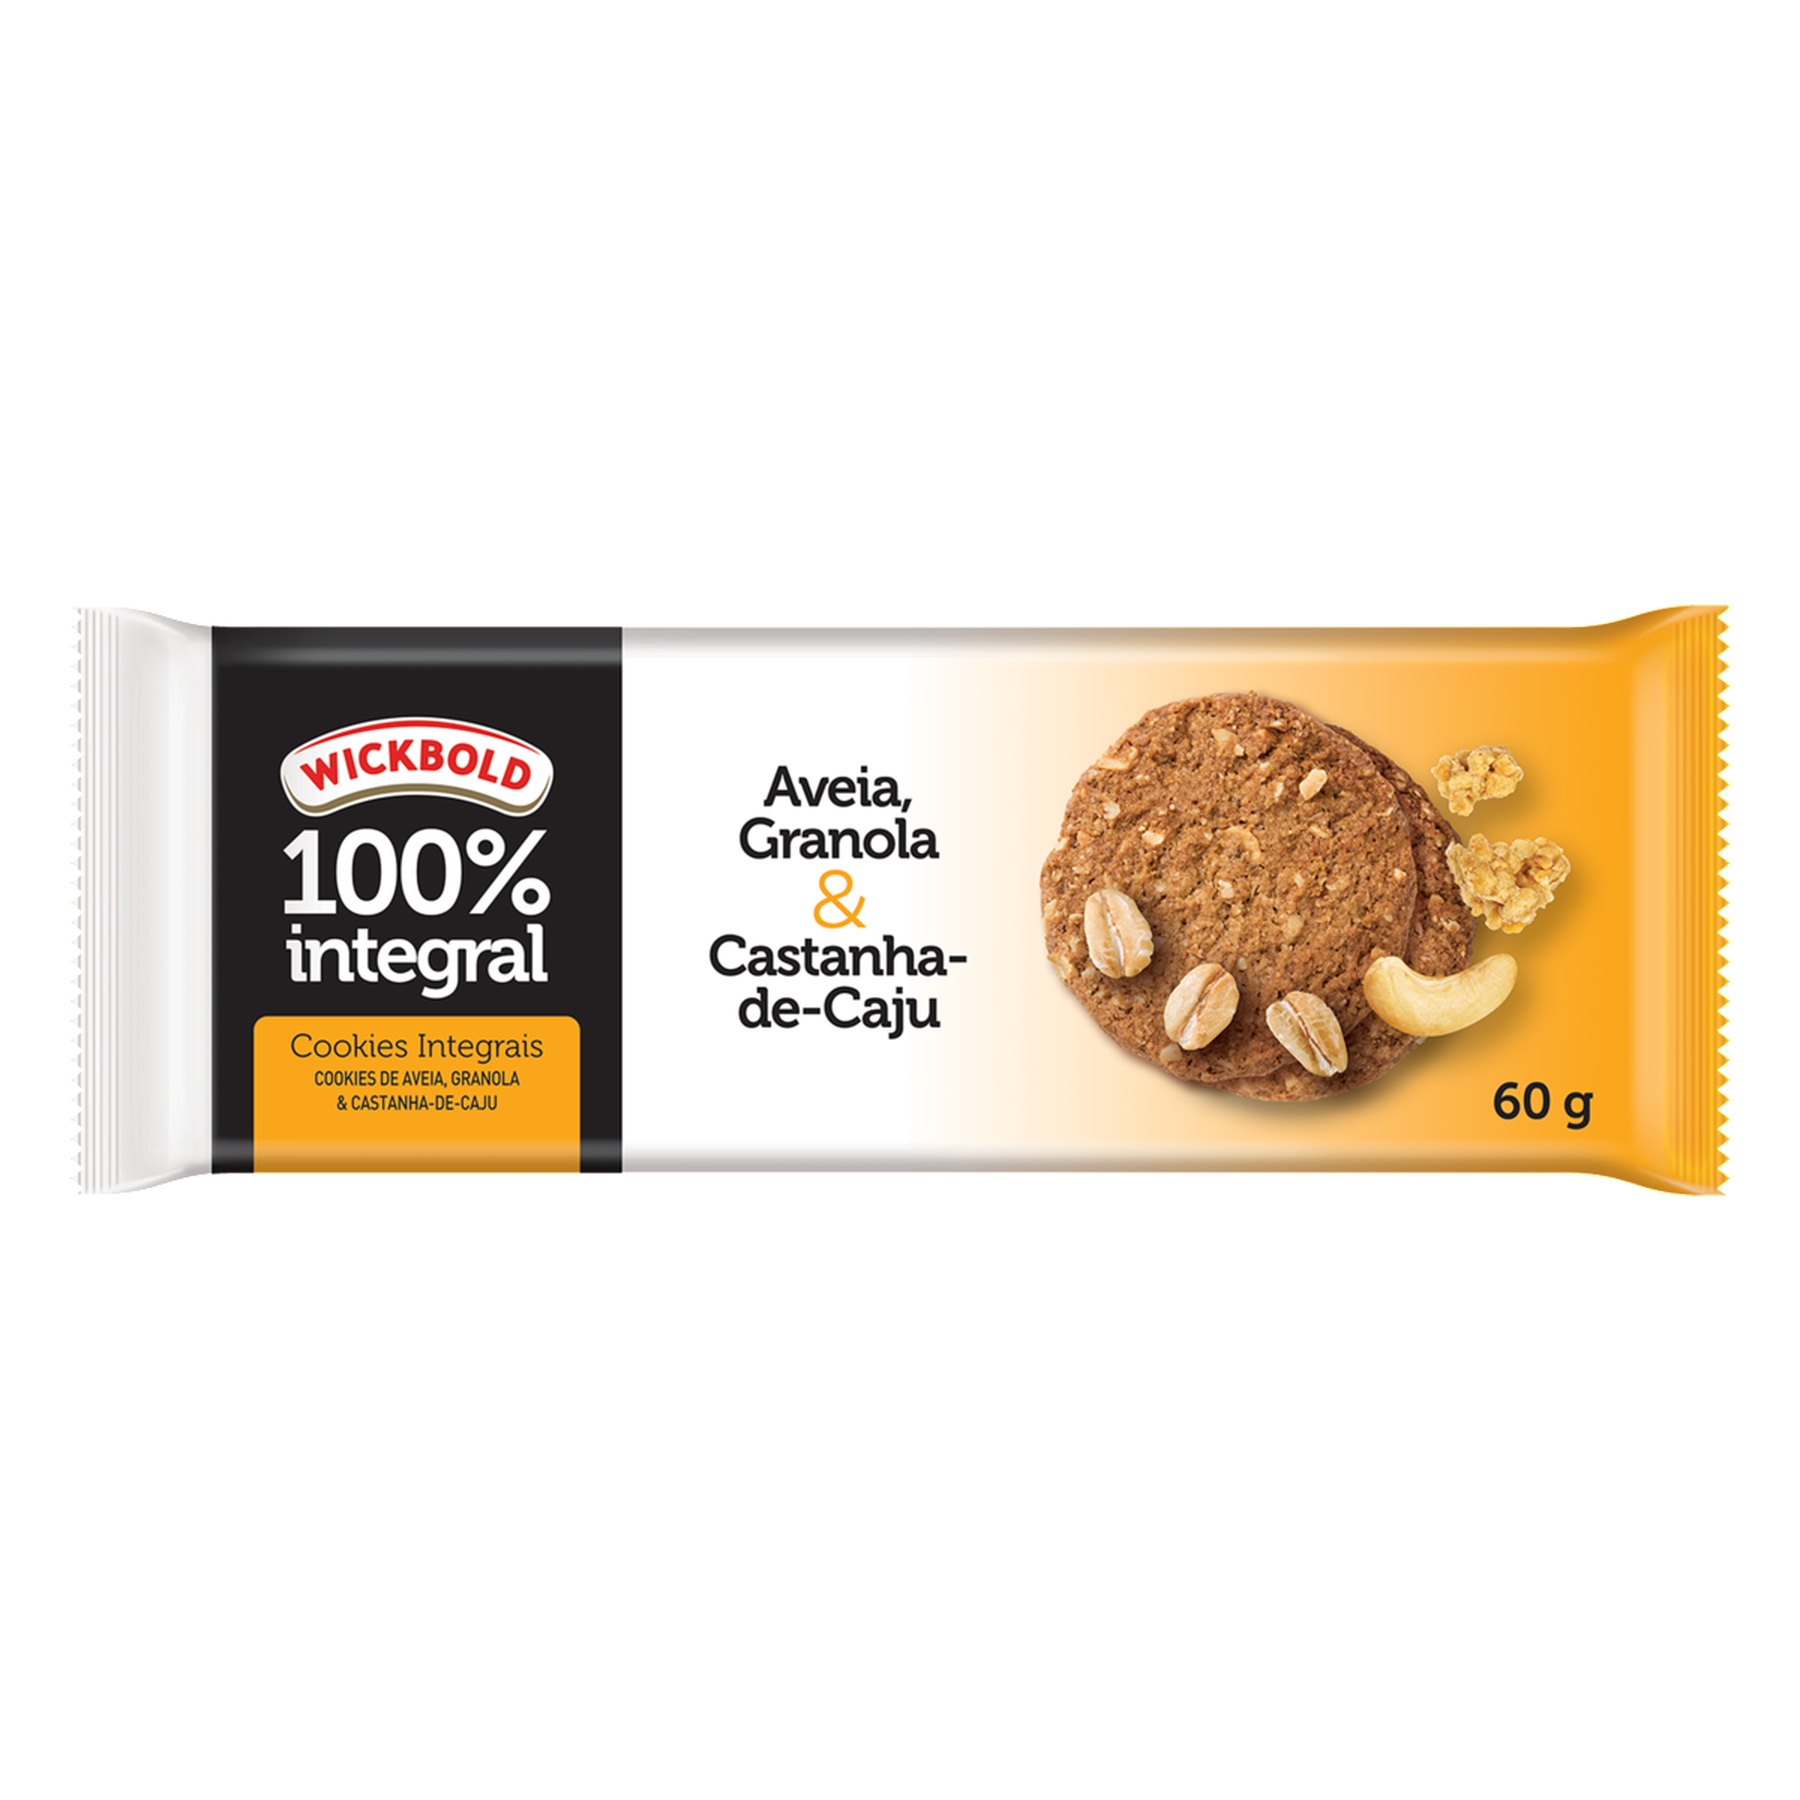 Biscoito Cookie Integral Aveia. Granola & Castanha-de-Caju Wickbold Pacote 60g